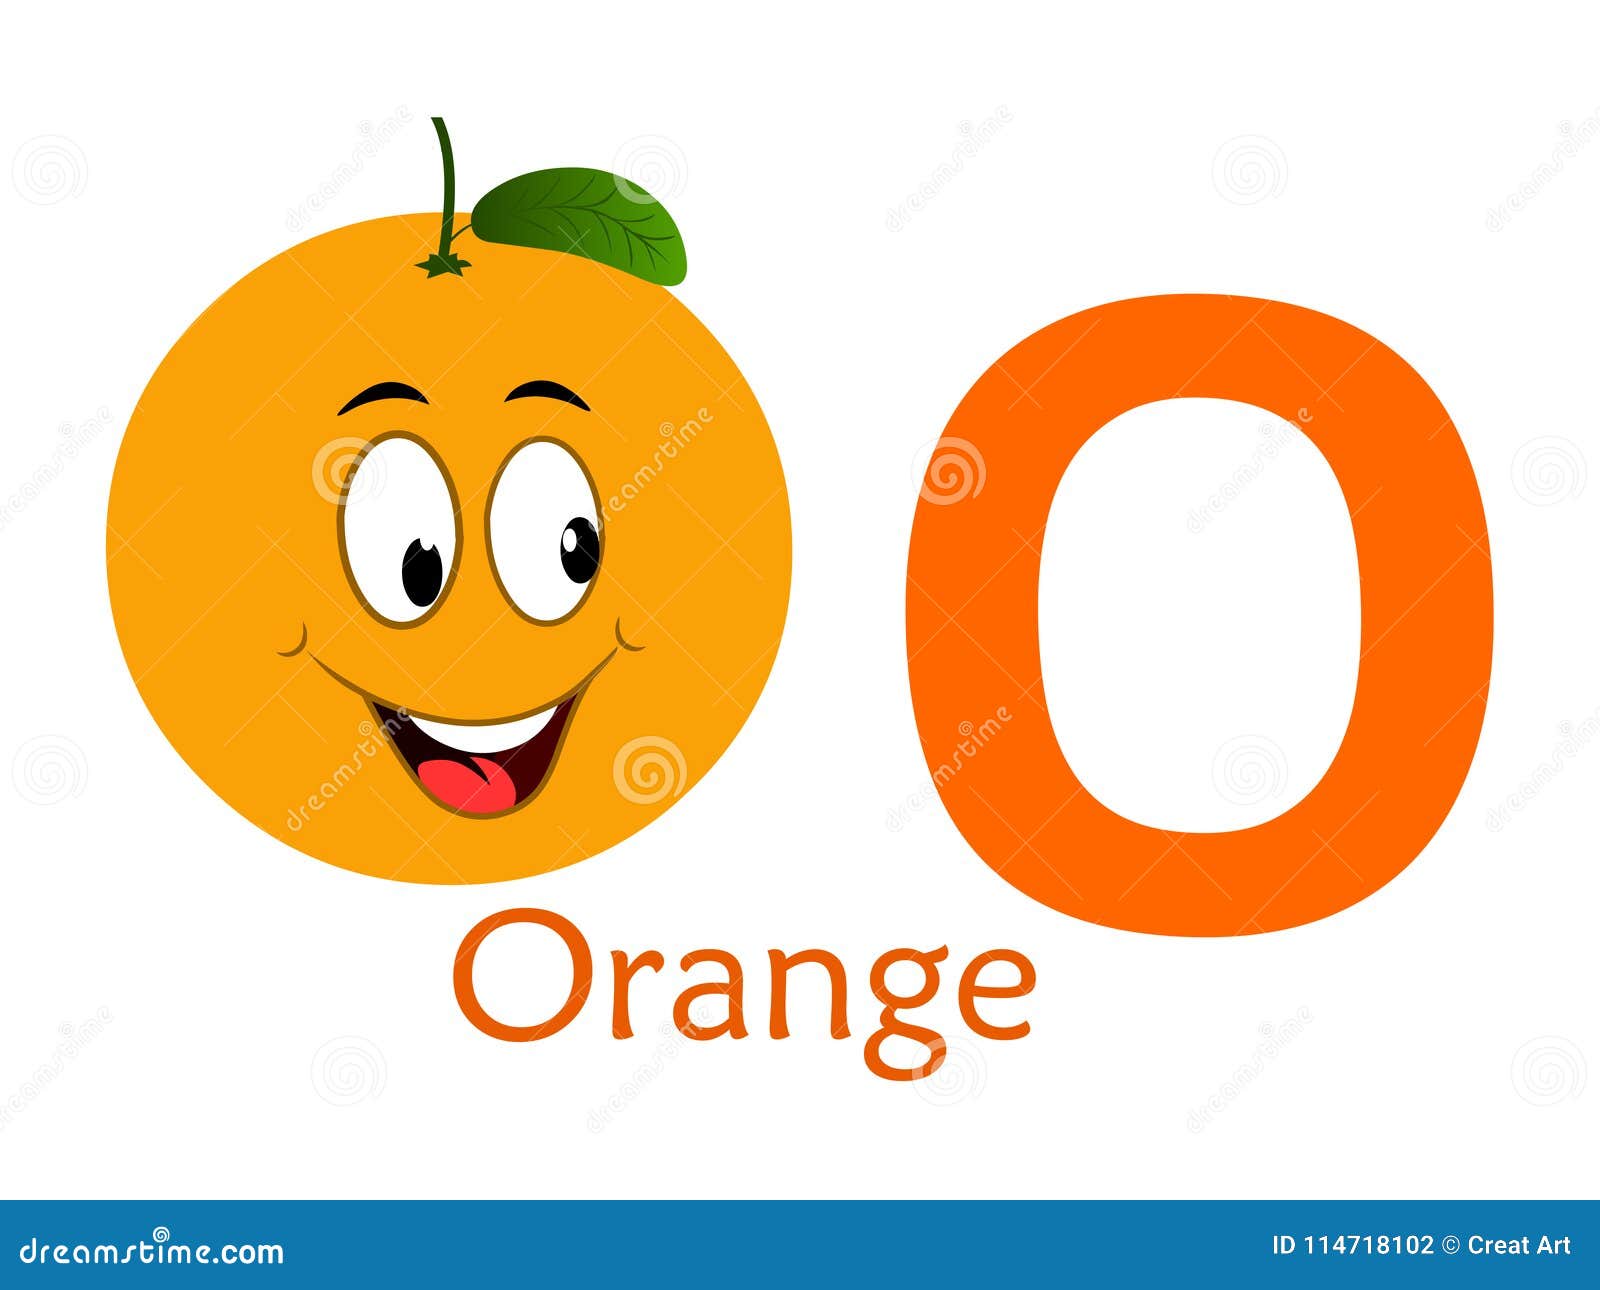 Как по английски будет апельсин. Letter o апельсин. Orange на английском. Буква o оранжевая. Апельсин на английском языке.